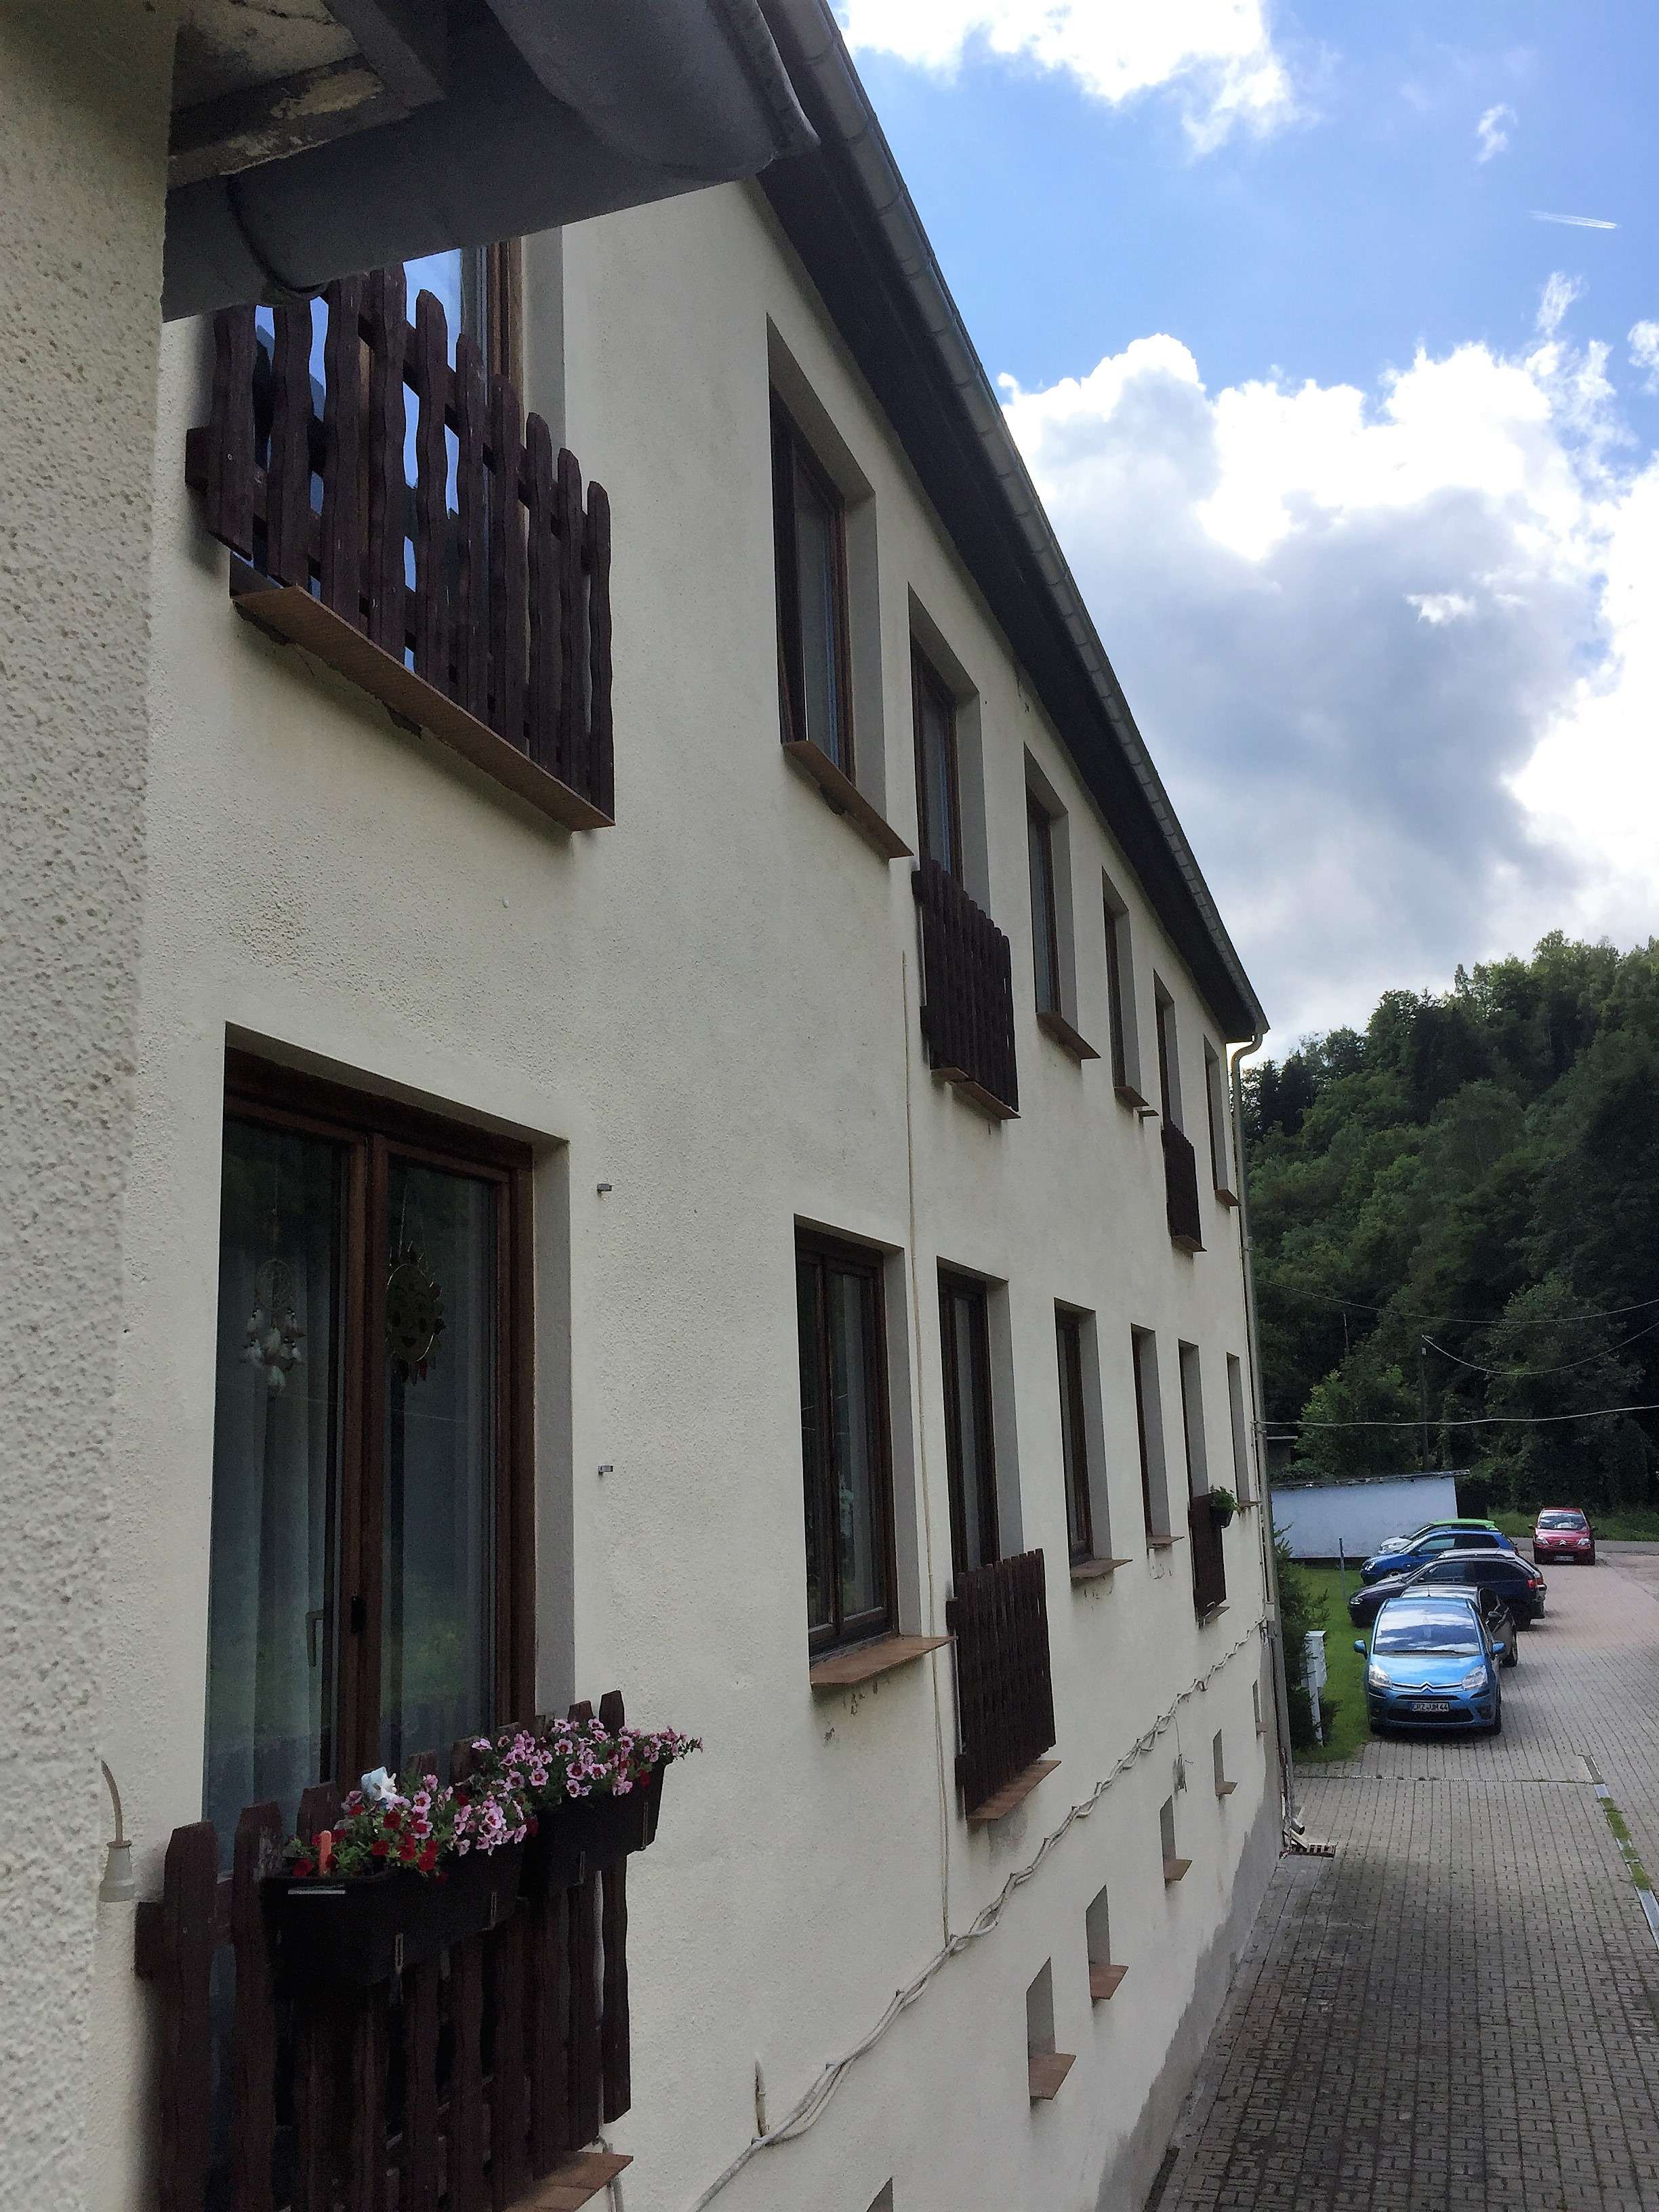 3 Zimmer Wohnung! Renoviert. - 313,16 EUR Kaltmiete, ca.  78,29 m² Wohnfläche in Breitenbrunn/ Antonsthal (PLZ: 08359)